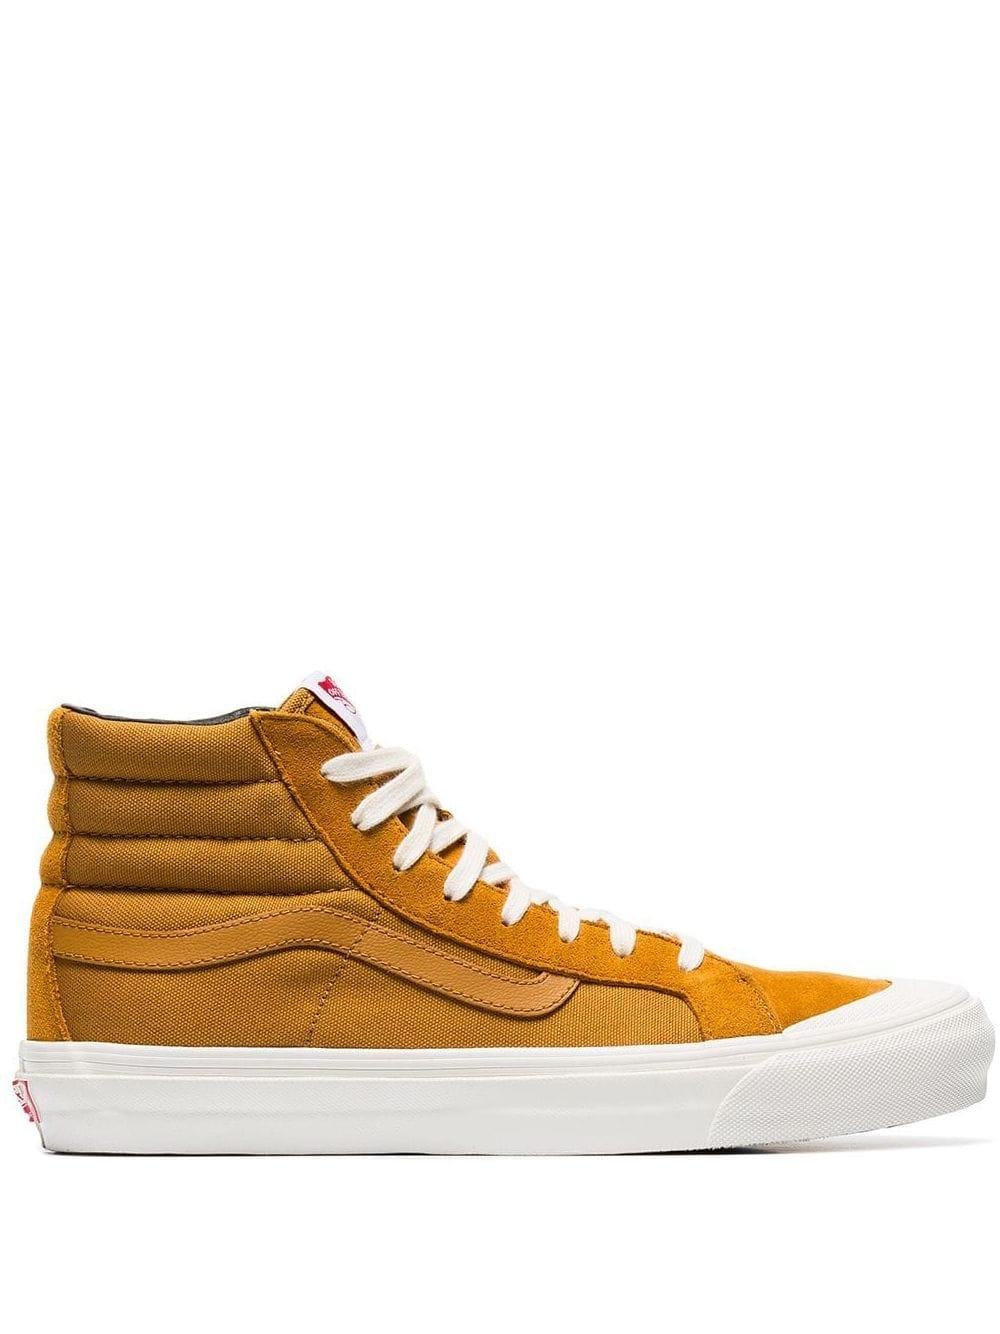 Forblive snyde Afhængighed Vans Mustard Yellow Og Style 138 Hi-top Suede Sneakers for Men | Lyst